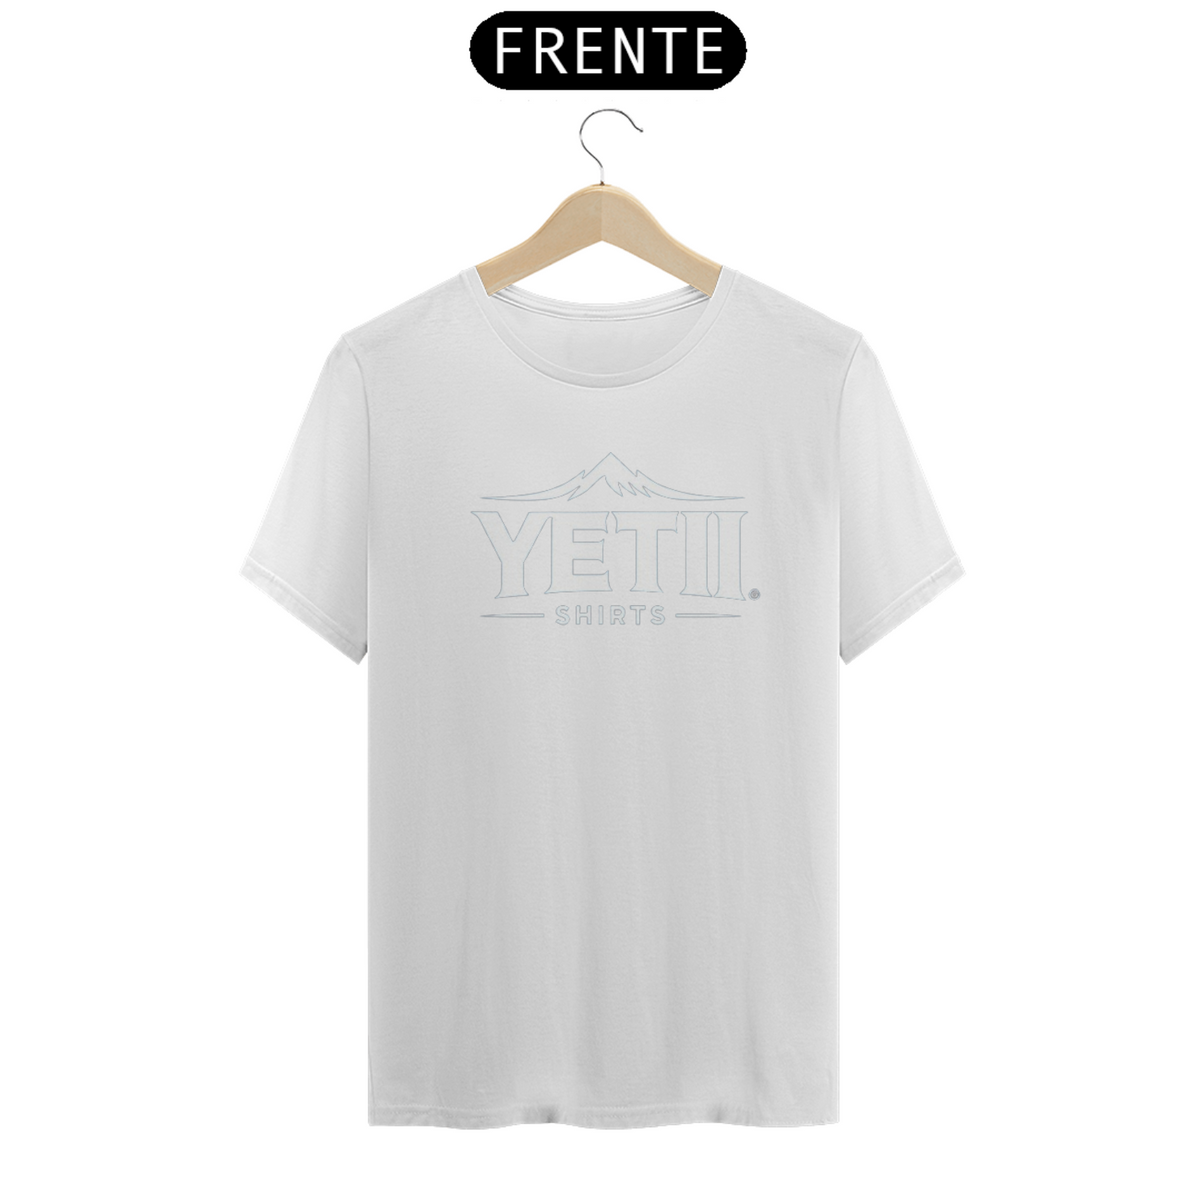 Nome do produto: Camiseta Yeti